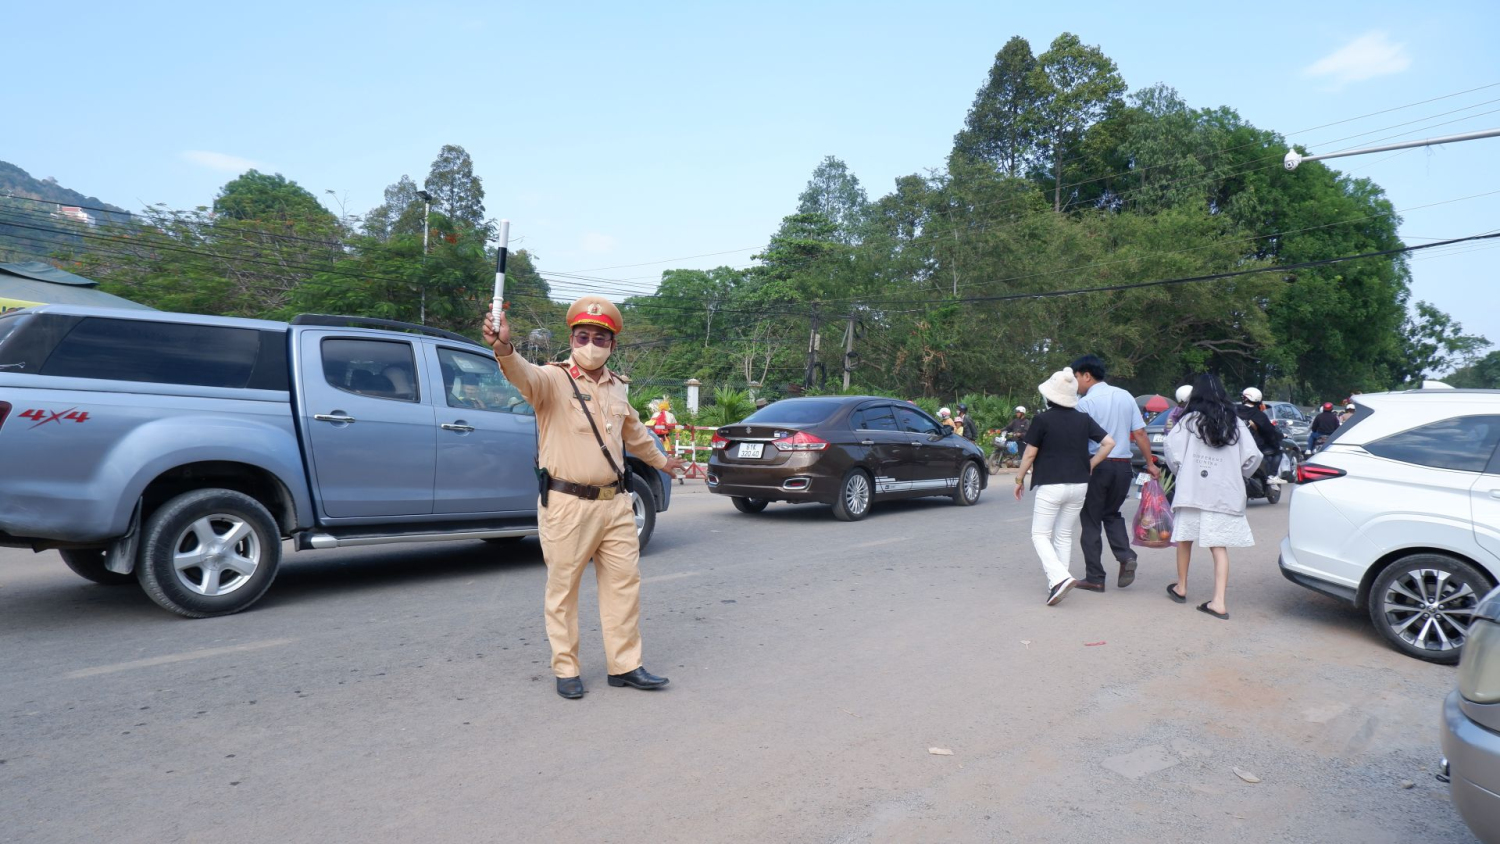 Lực lượng Cảnh sát giao thông làm nhiệm vụ phân luồng giao thông khu vực đường dẫn vào khu du lịch quốc gia núi Bà Đen.